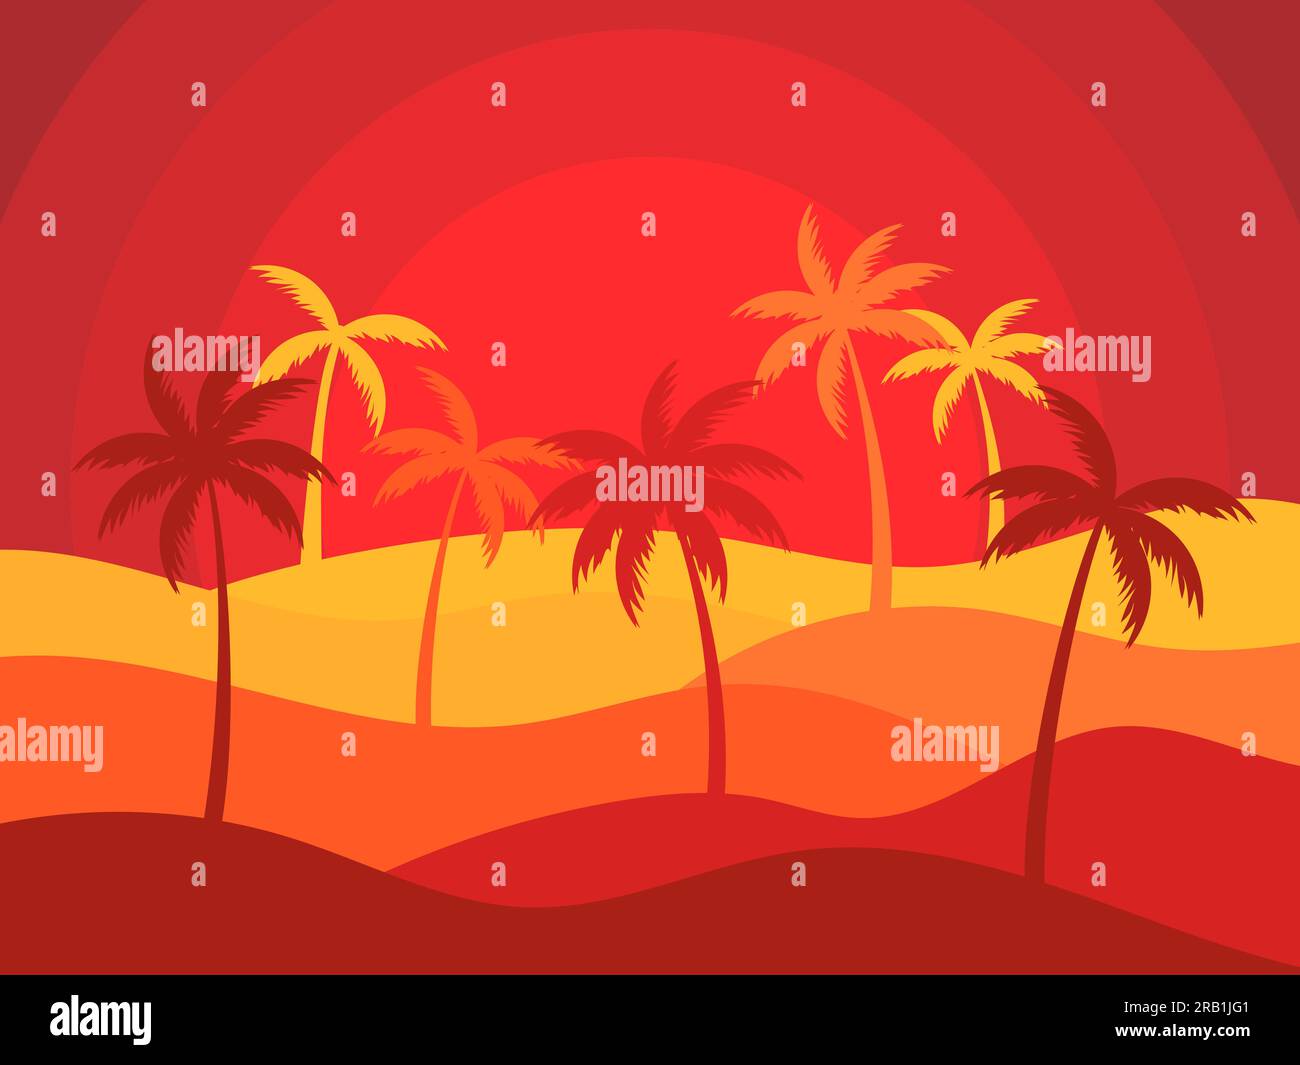 Paysage désertique ondulé avec soleil et palmiers dans le style du papier coupé. Lever de soleil dans le désert, dunes de sable avec silhouettes de palmiers. Conception pour impression, Illustration de Vecteur